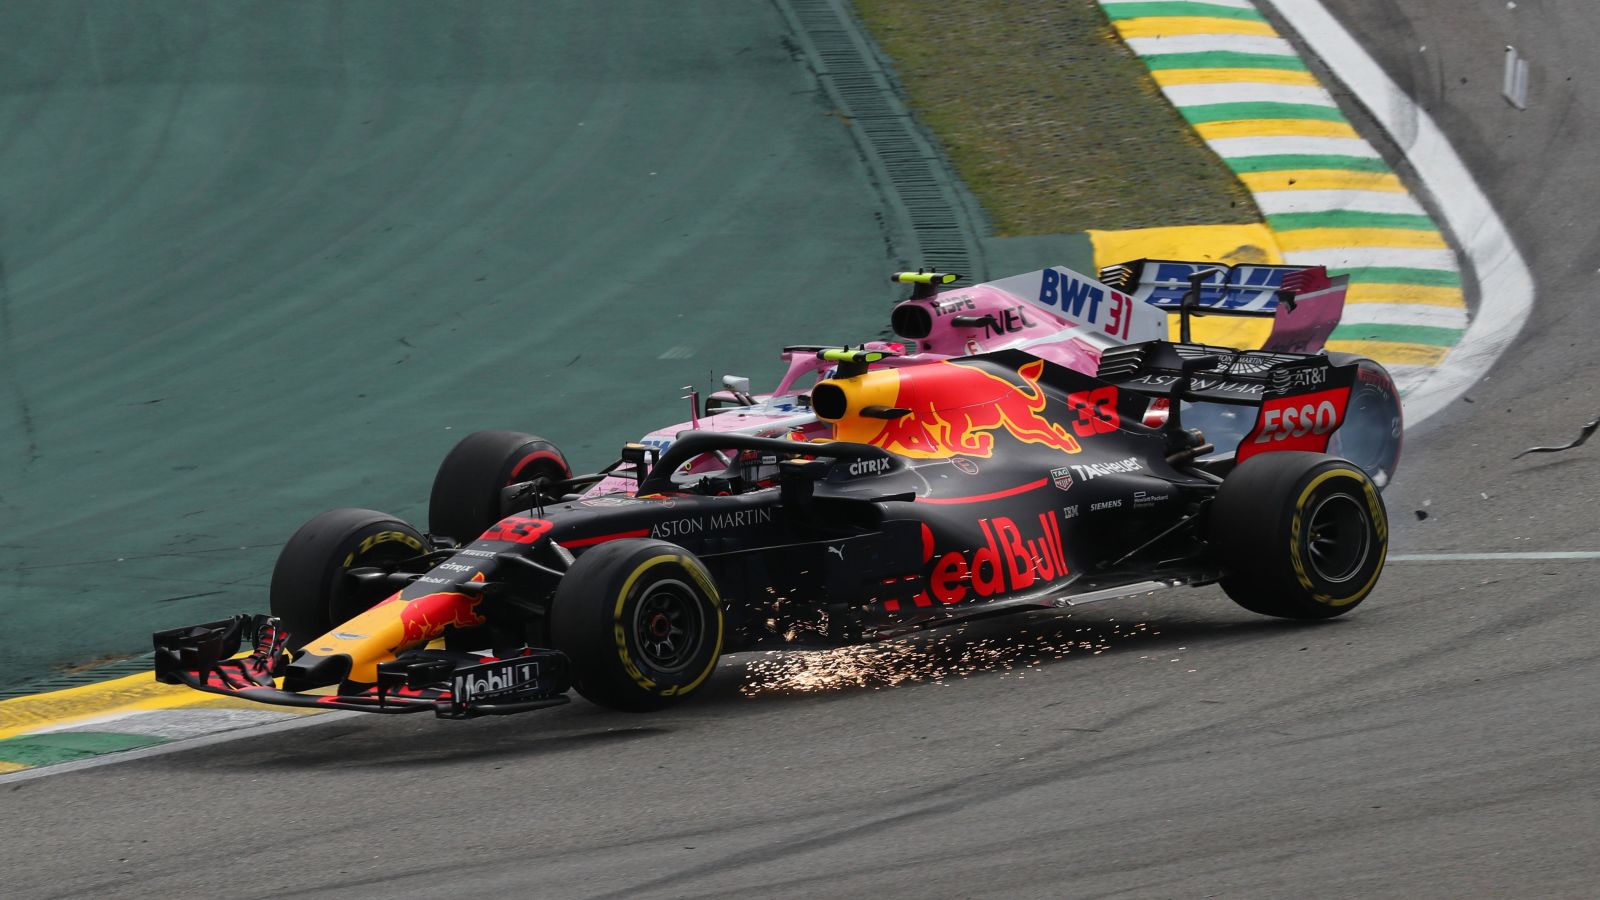 马克斯·维斯塔潘(红牛)与埃斯特班·奥康(赛车点印度力量)在臭名昭著的巴西大奖赛瞬间相撞。2018年11月，圣保罗。